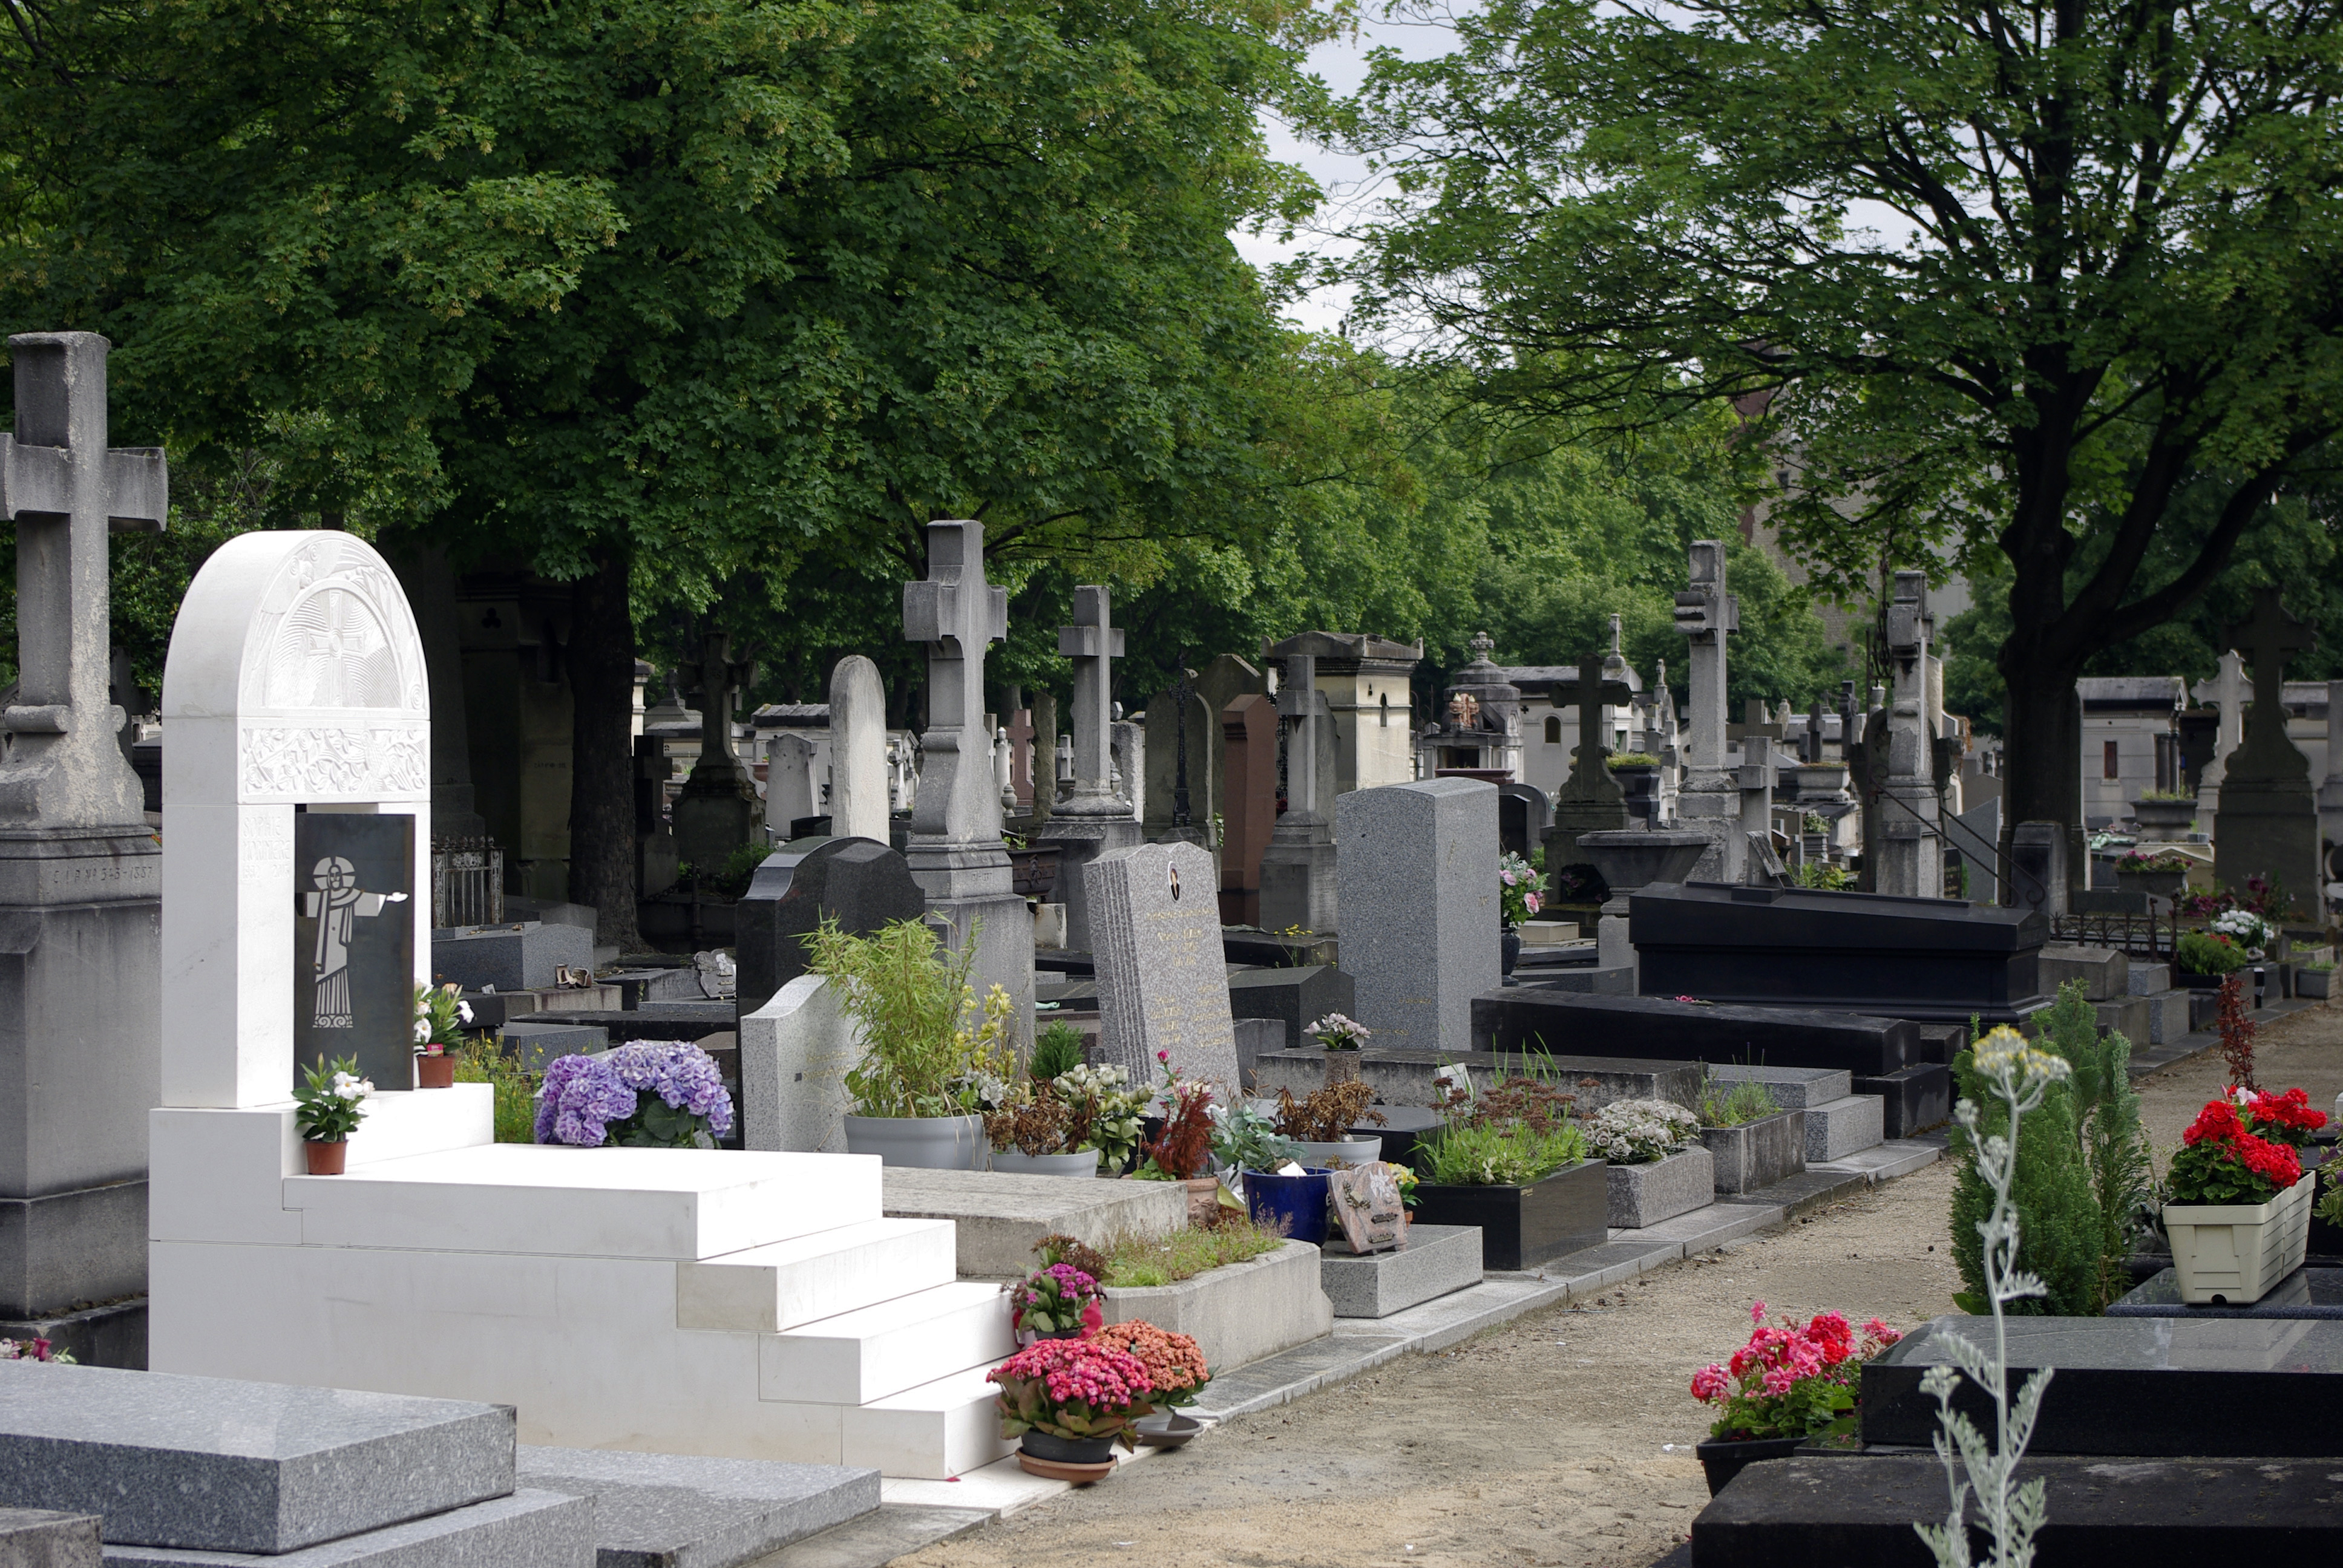 Résultat de recherche d'images pour "tombe au cimetière"